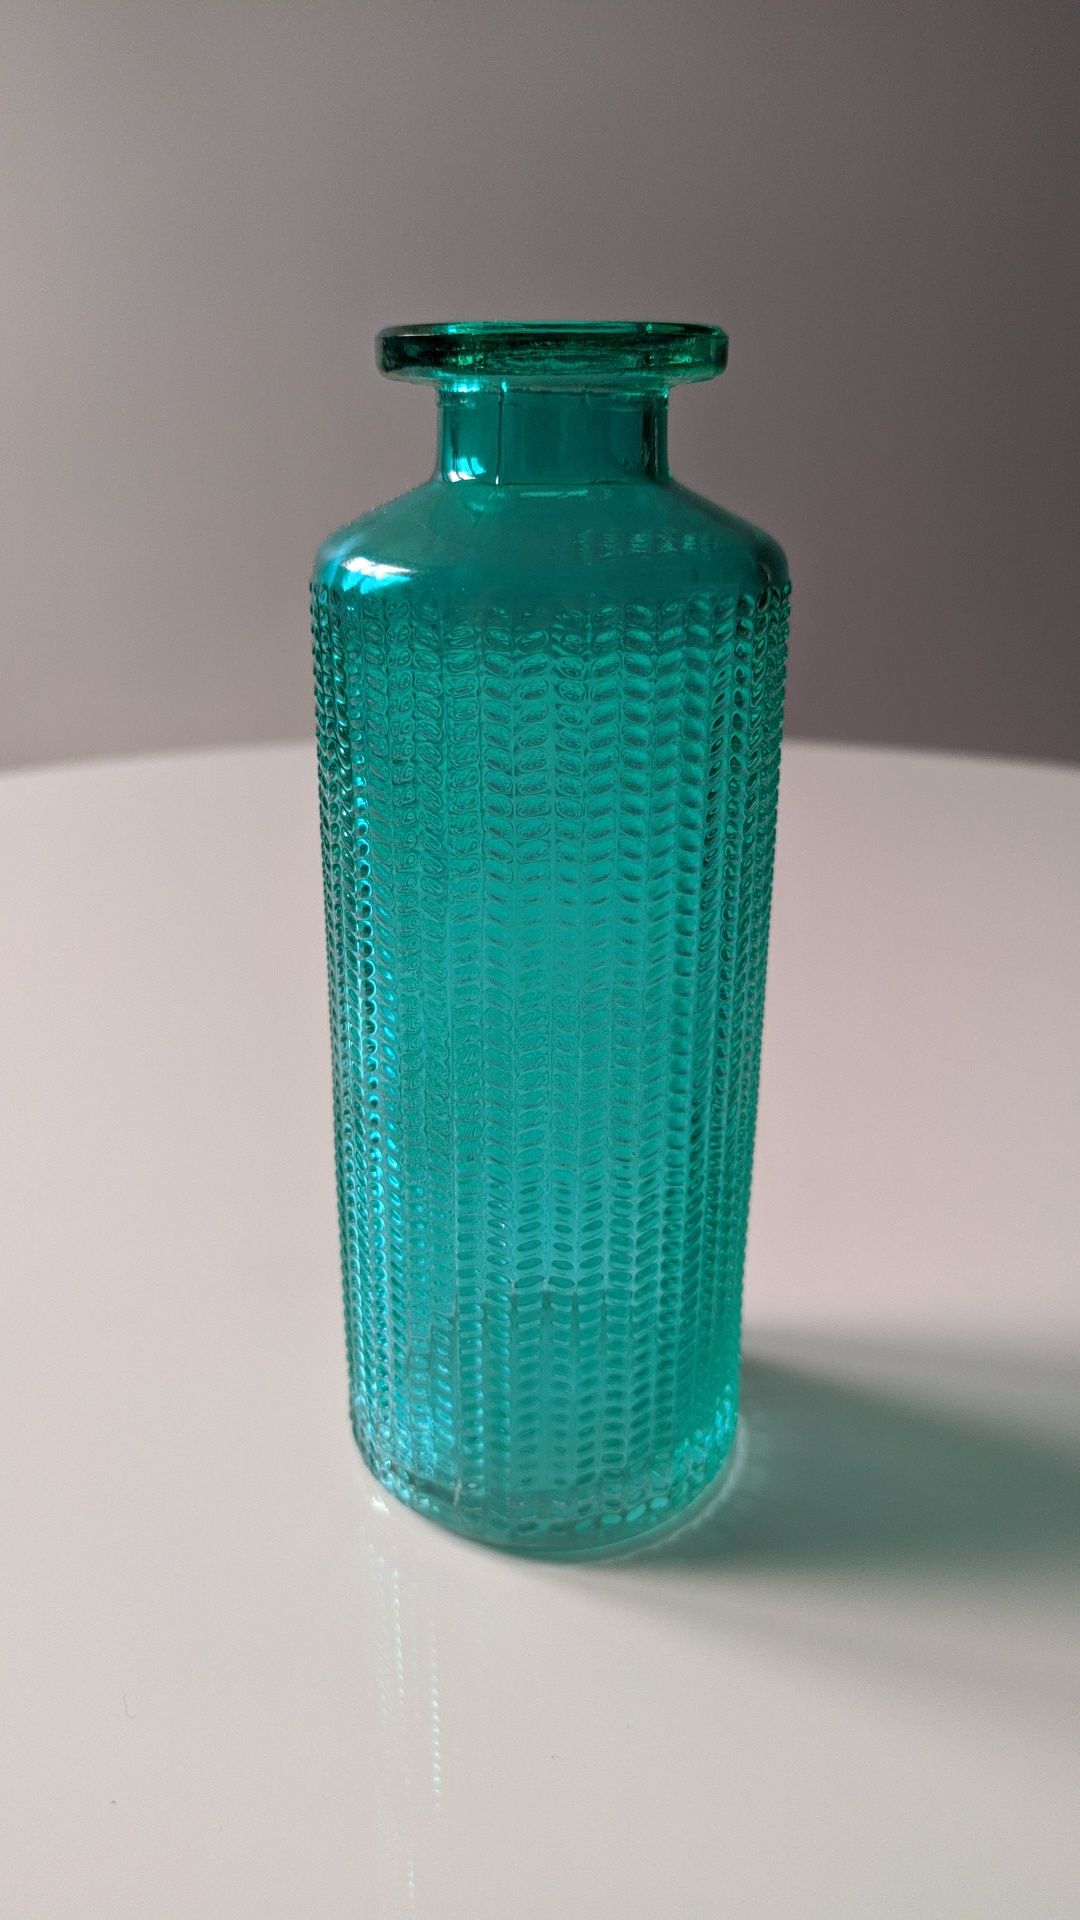 Szklany mały wazonik 13 cm turkus odcienie niebieskiego